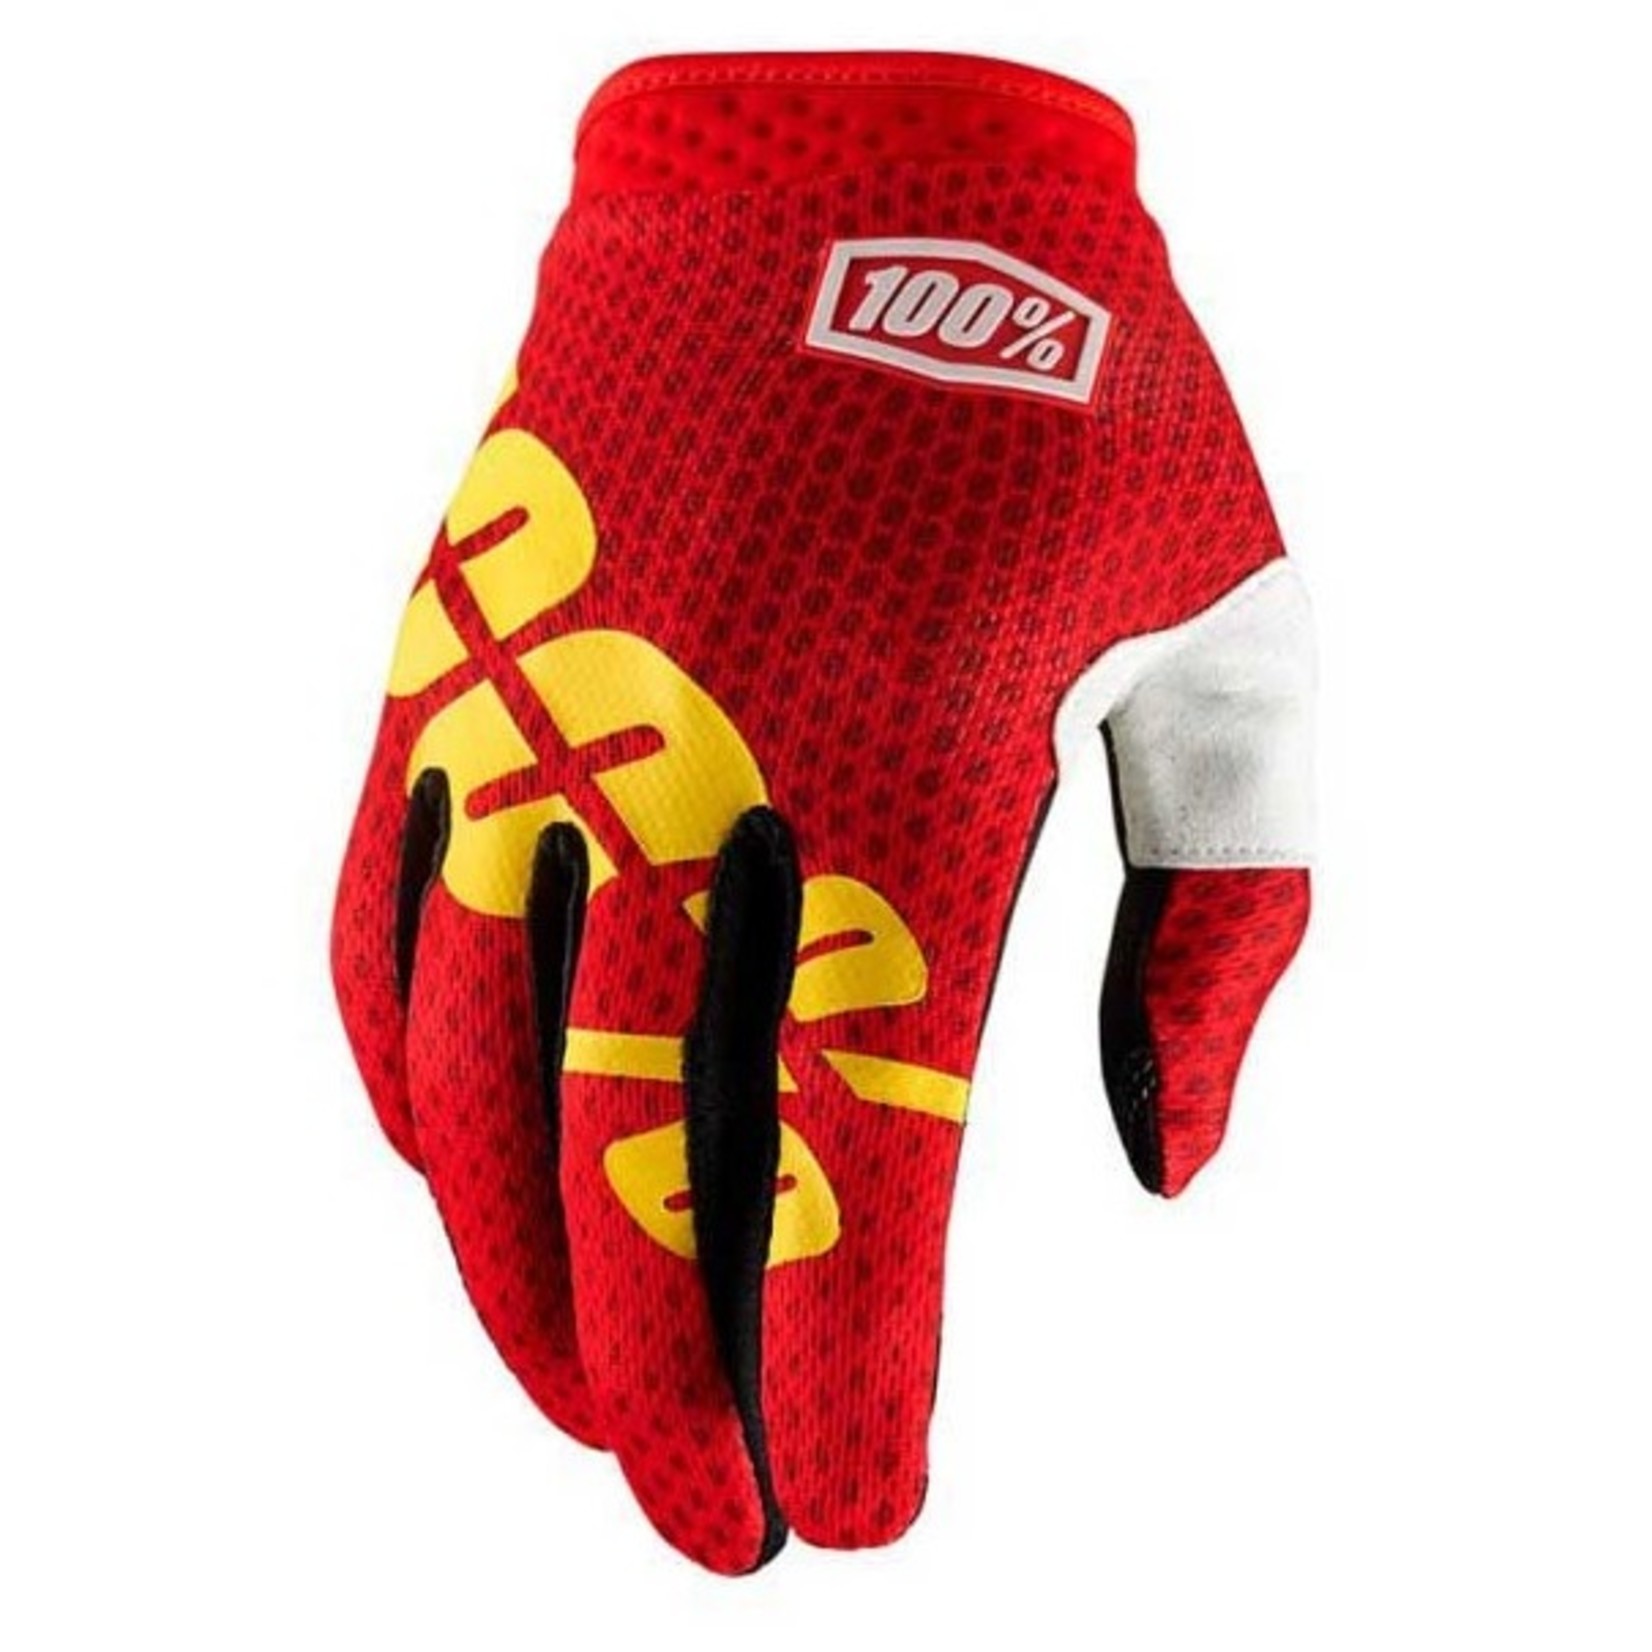 100% 100% iTrack Gloves